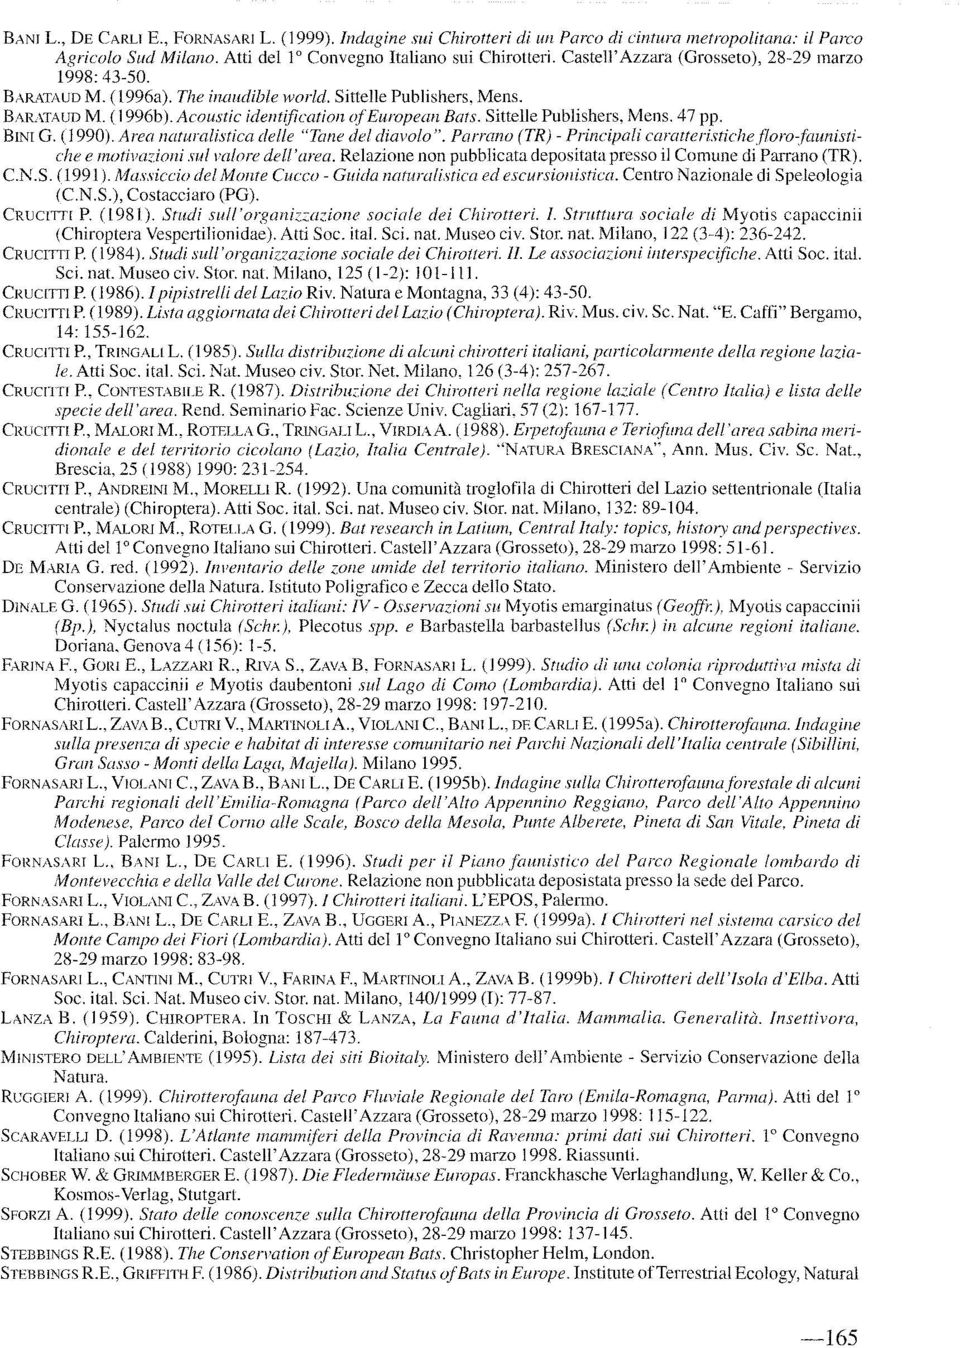 Sittelle Publishers, Mens. 47 pp. BINI G. (1990). Area naturalistica delle "Tane del diavolo". Parrano (TR) Principali caratteristichefloro}aunistiche e motiva~ioni sul m/ore del/' area.